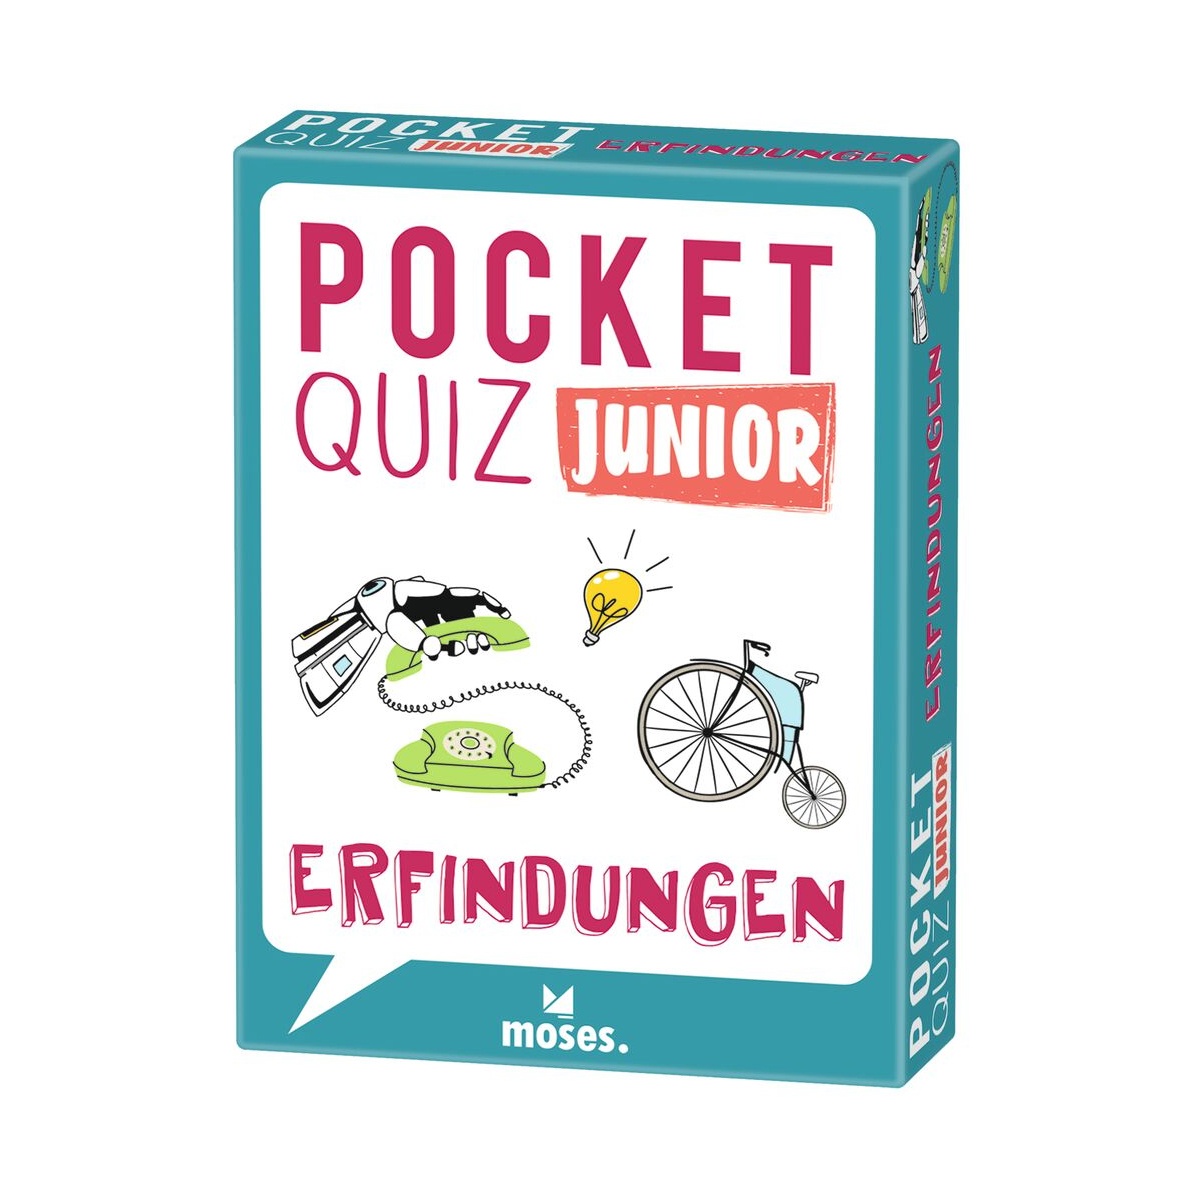 Pocket Quiz Junior Erfindungen von Moses